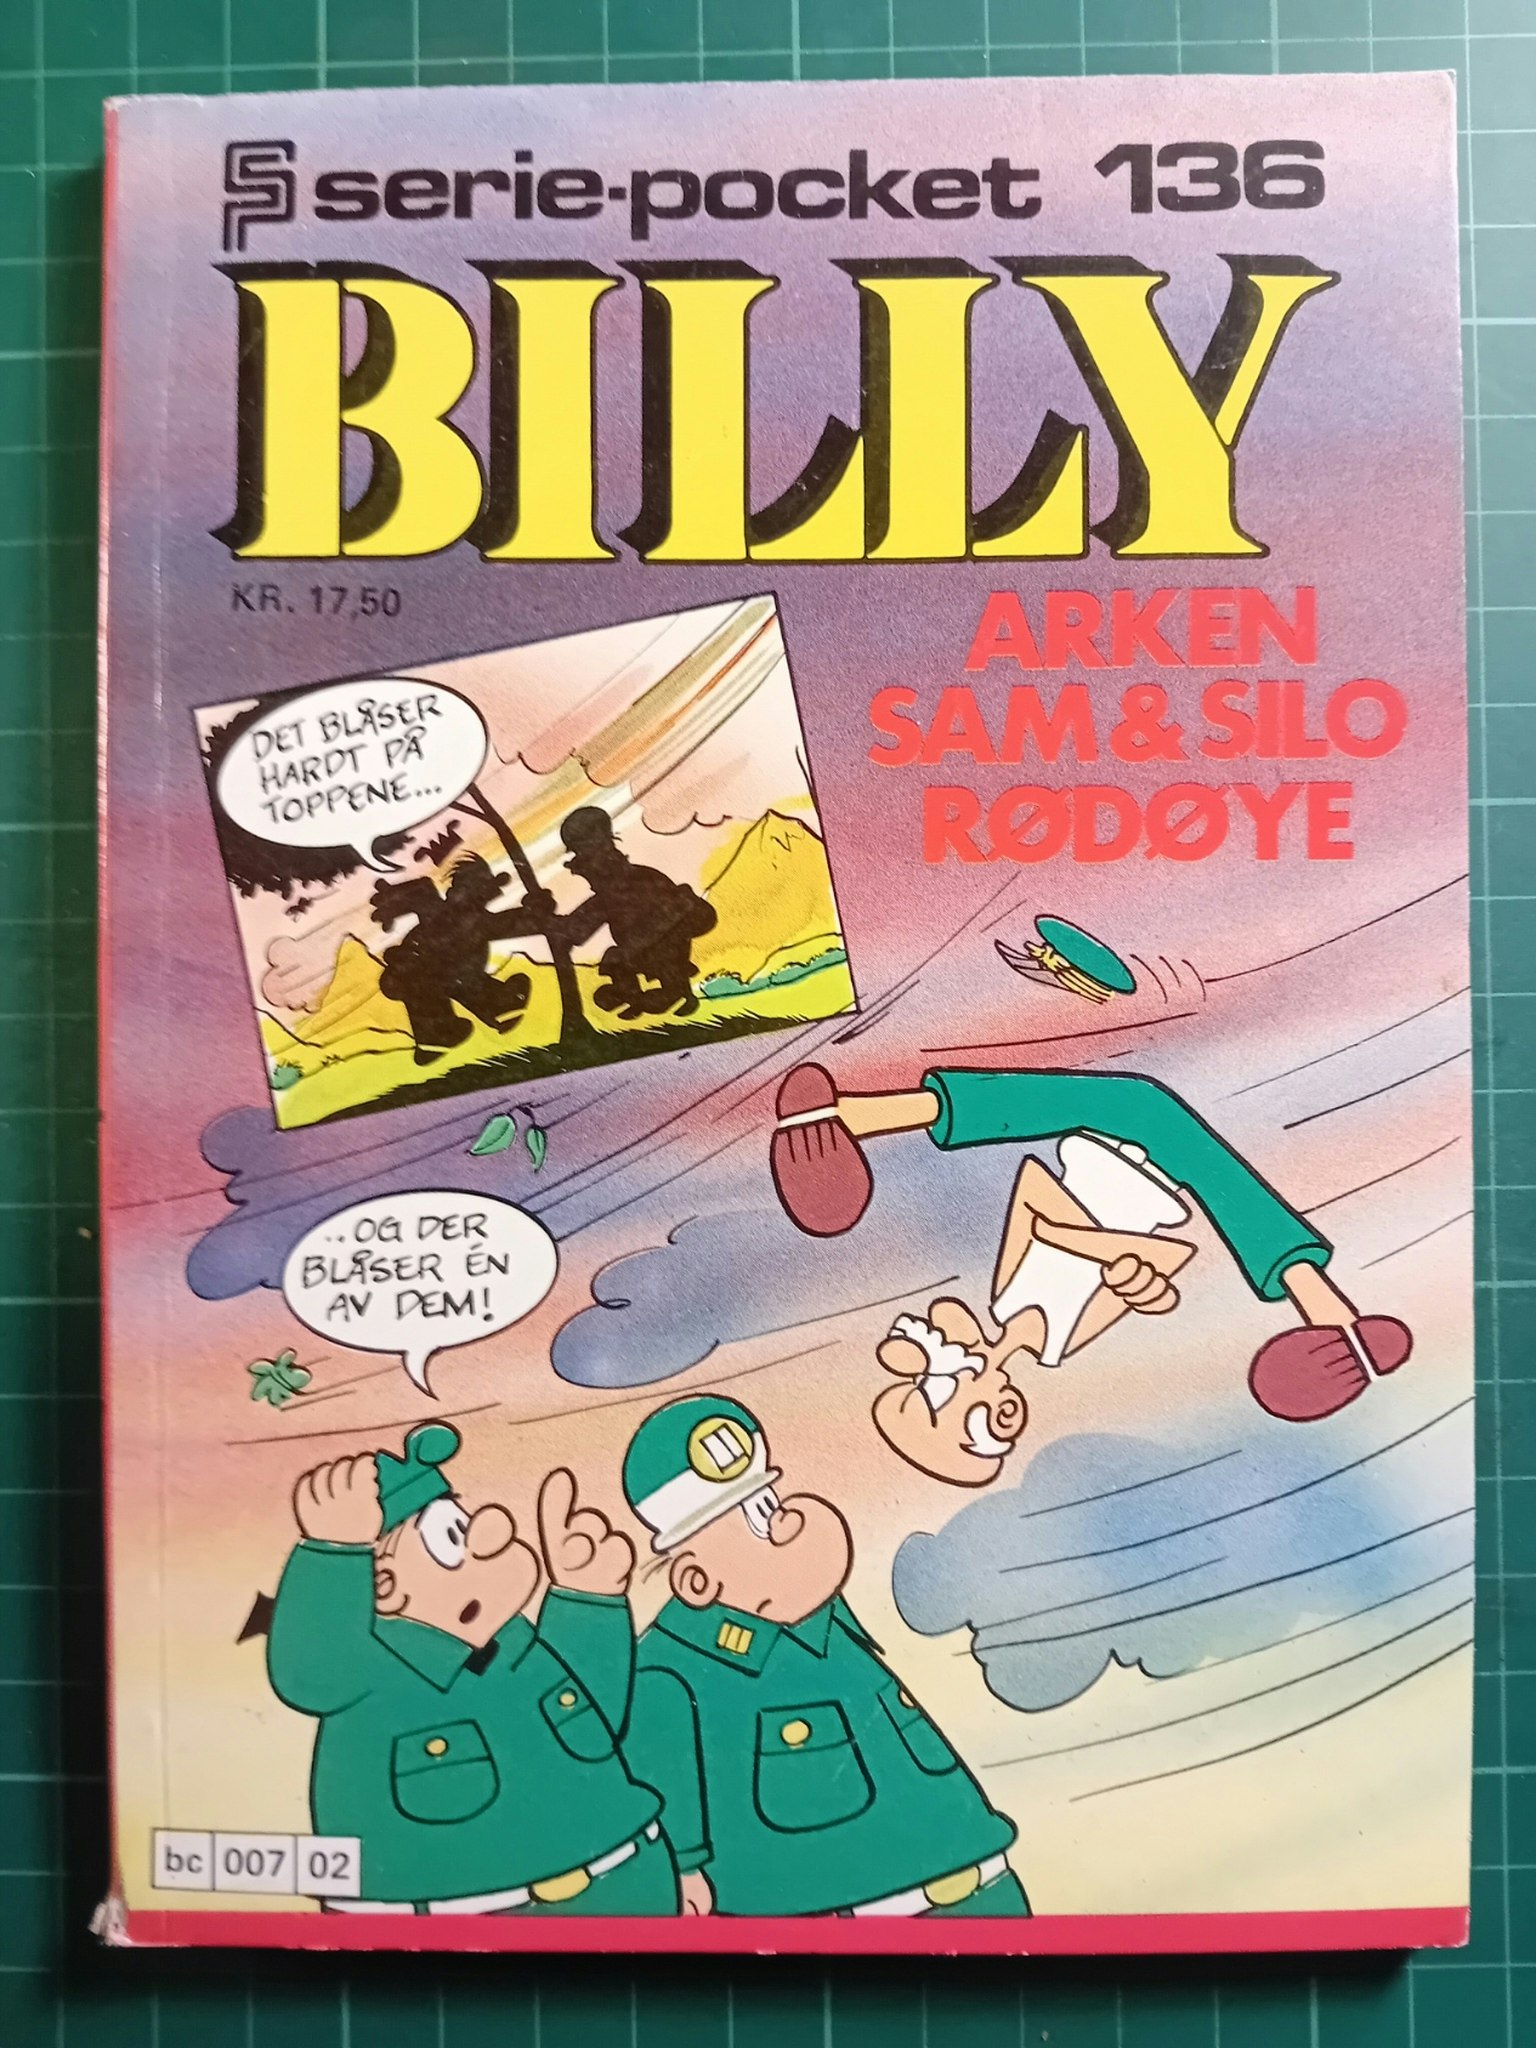 Serie-pocket 136 : Billy